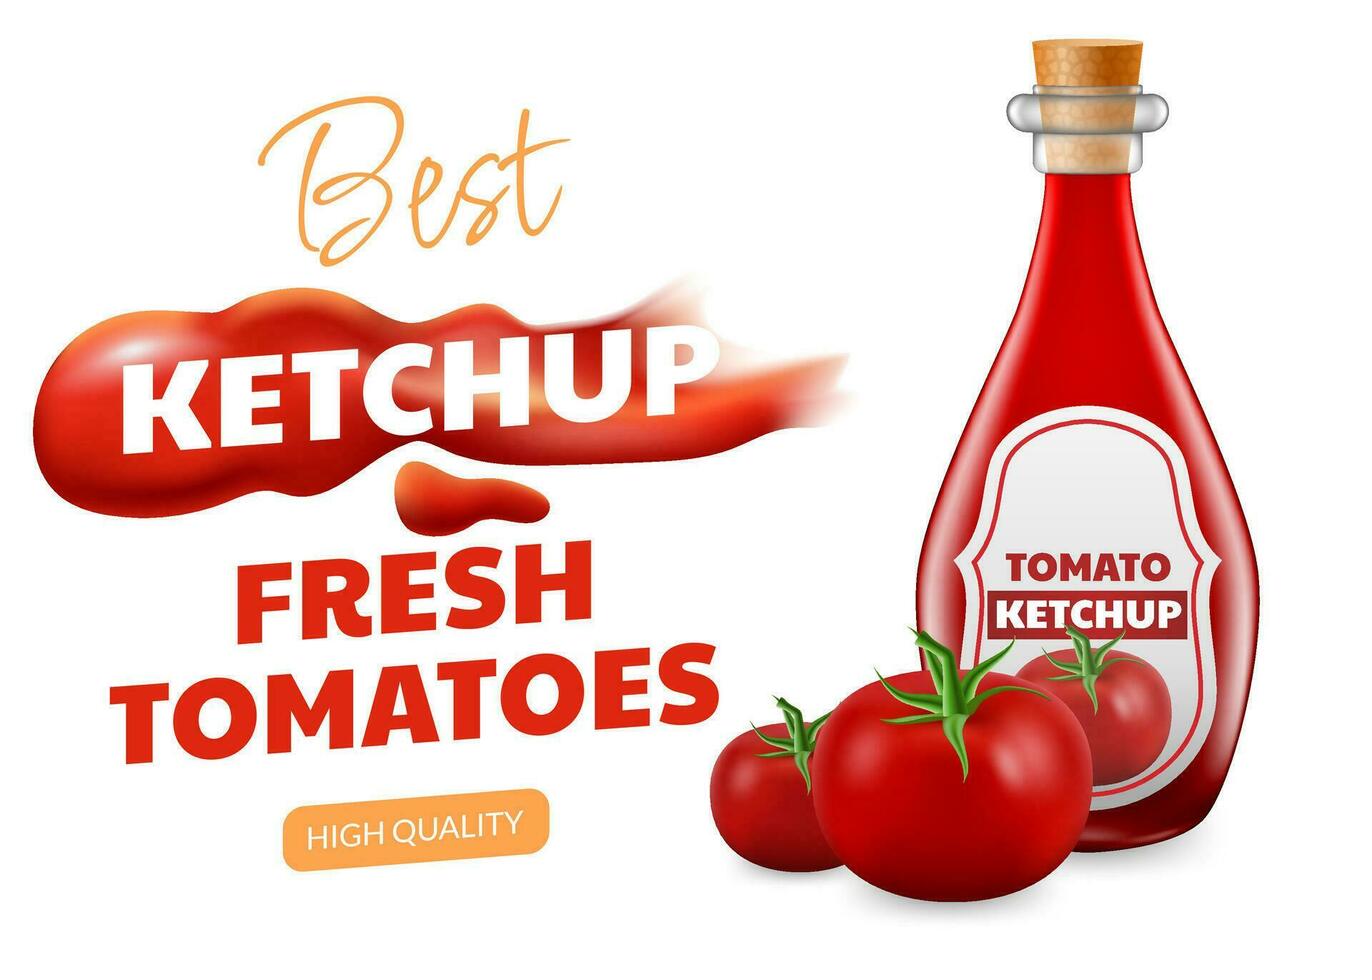 realista 3d vector ilustración de un vaso botella con vibrante y sabroso salsa de tomate. el imagen vitrinas el líquido salsa goteo y formando un mancha. para anuncios, pancartas, o embalaje diseños